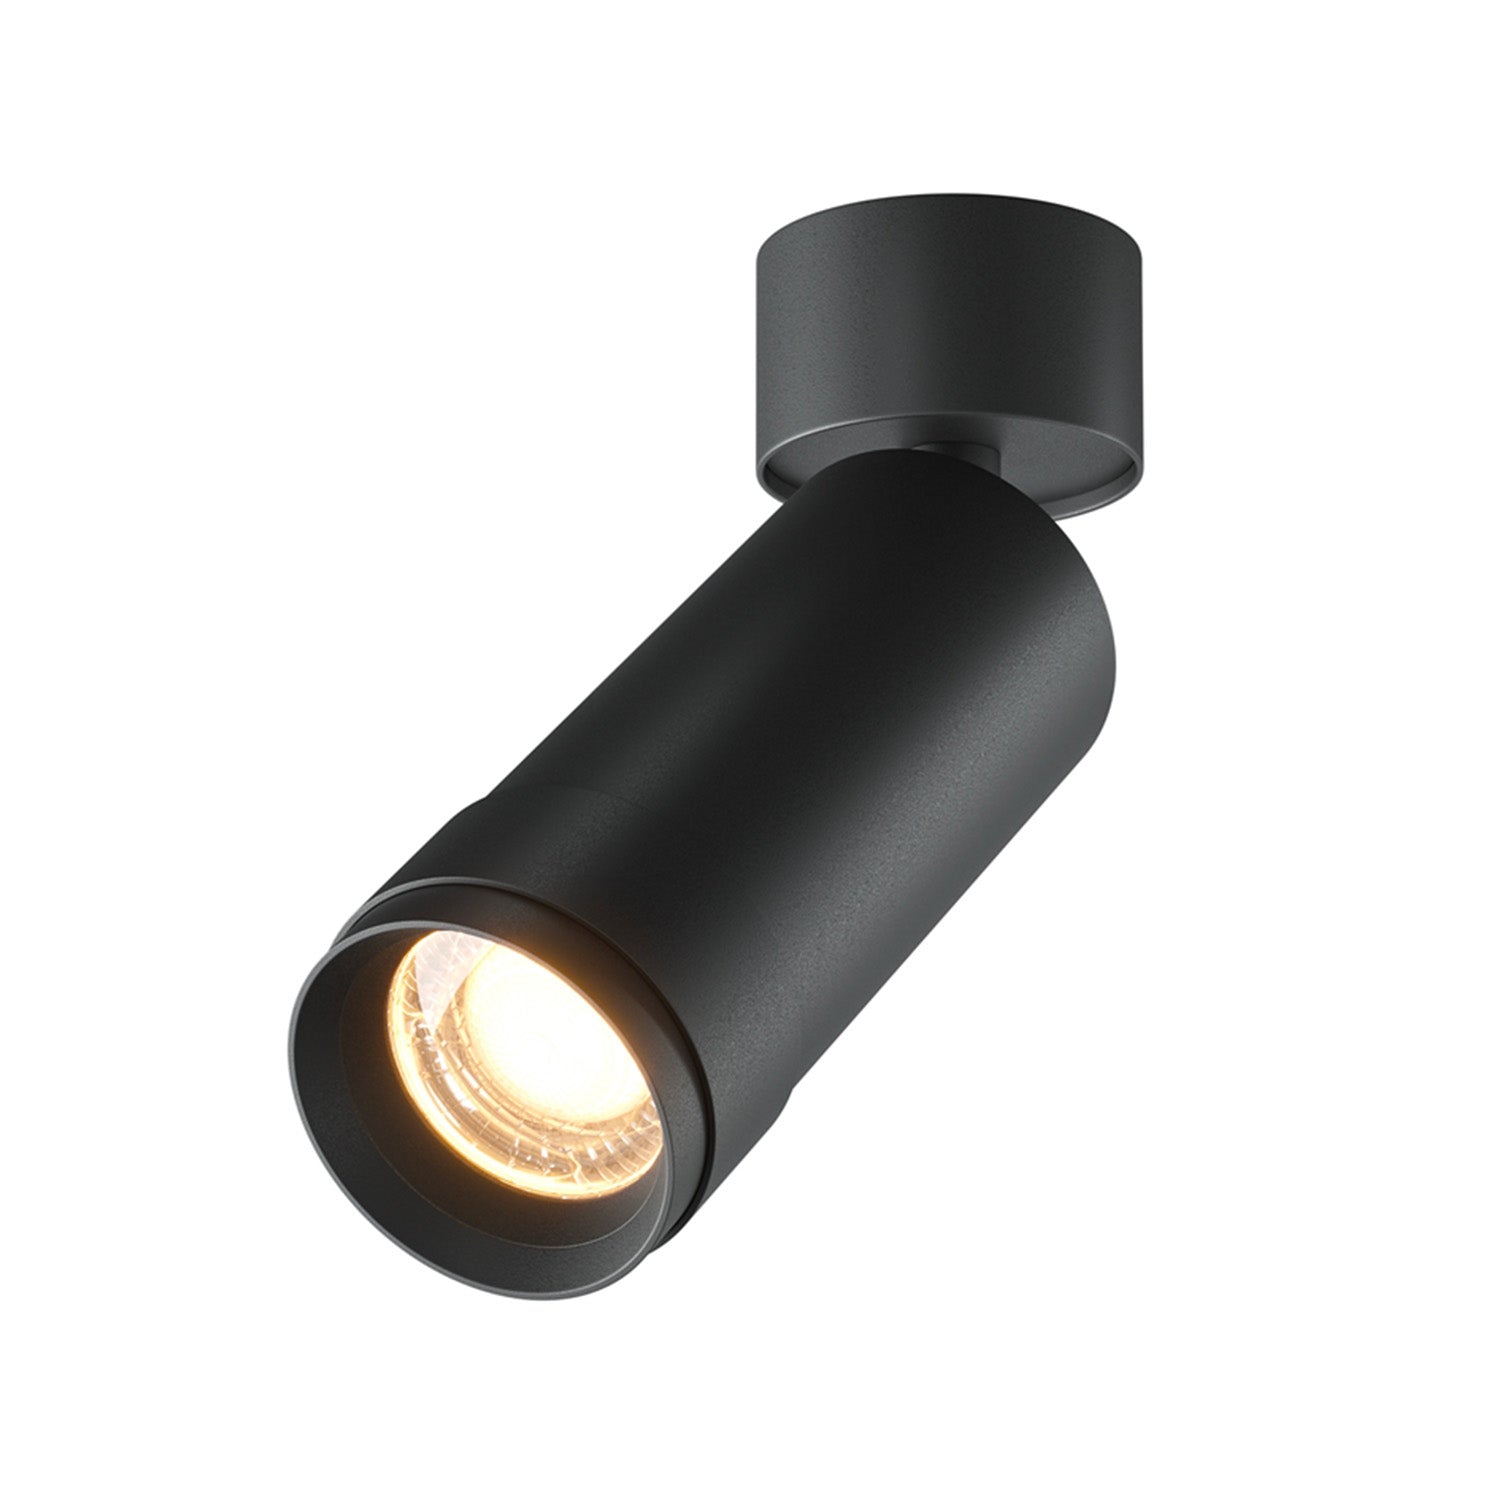 FOCUS ZOOM - Integrated LED adjustable wall spotlight